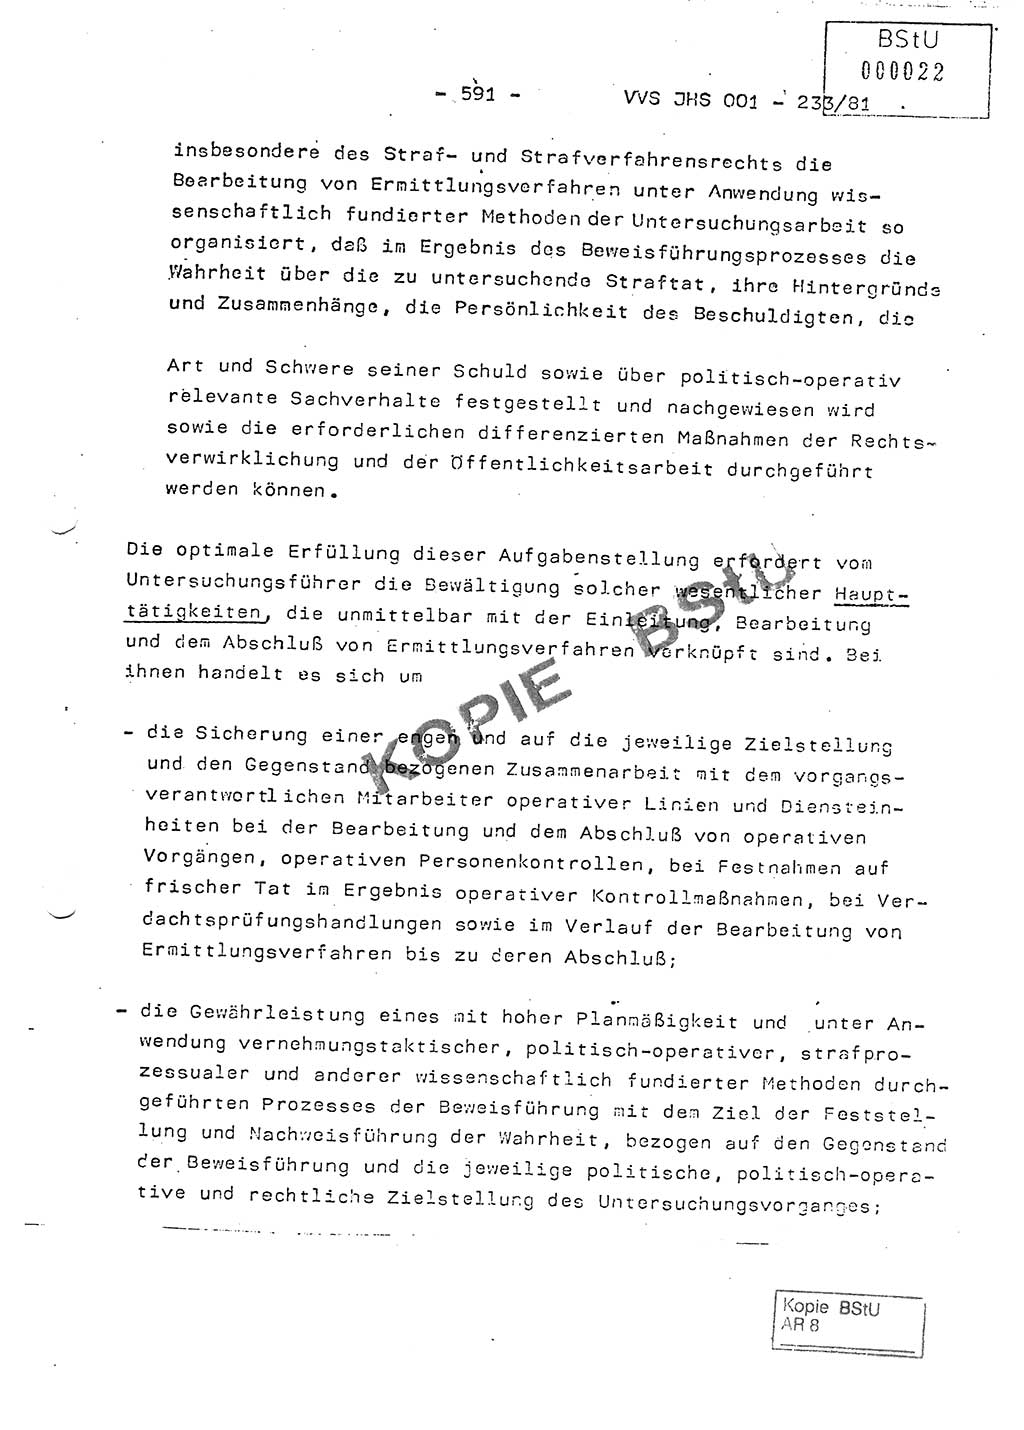 Dissertation Oberstleutnant Horst Zank (JHS), Oberstleutnant Dr. Karl-Heinz Knoblauch (JHS), Oberstleutnant Gustav-Adolf Kowalewski (HA Ⅸ), Oberstleutnant Wolfgang Plötner (HA Ⅸ), Ministerium für Staatssicherheit (MfS) [Deutsche Demokratische Republik (DDR)], Juristische Hochschule (JHS), Vertrauliche Verschlußsache (VVS) o001-233/81, Potsdam 1981, Blatt 591 (Diss. MfS DDR JHS VVS o001-233/81 1981, Bl. 591)